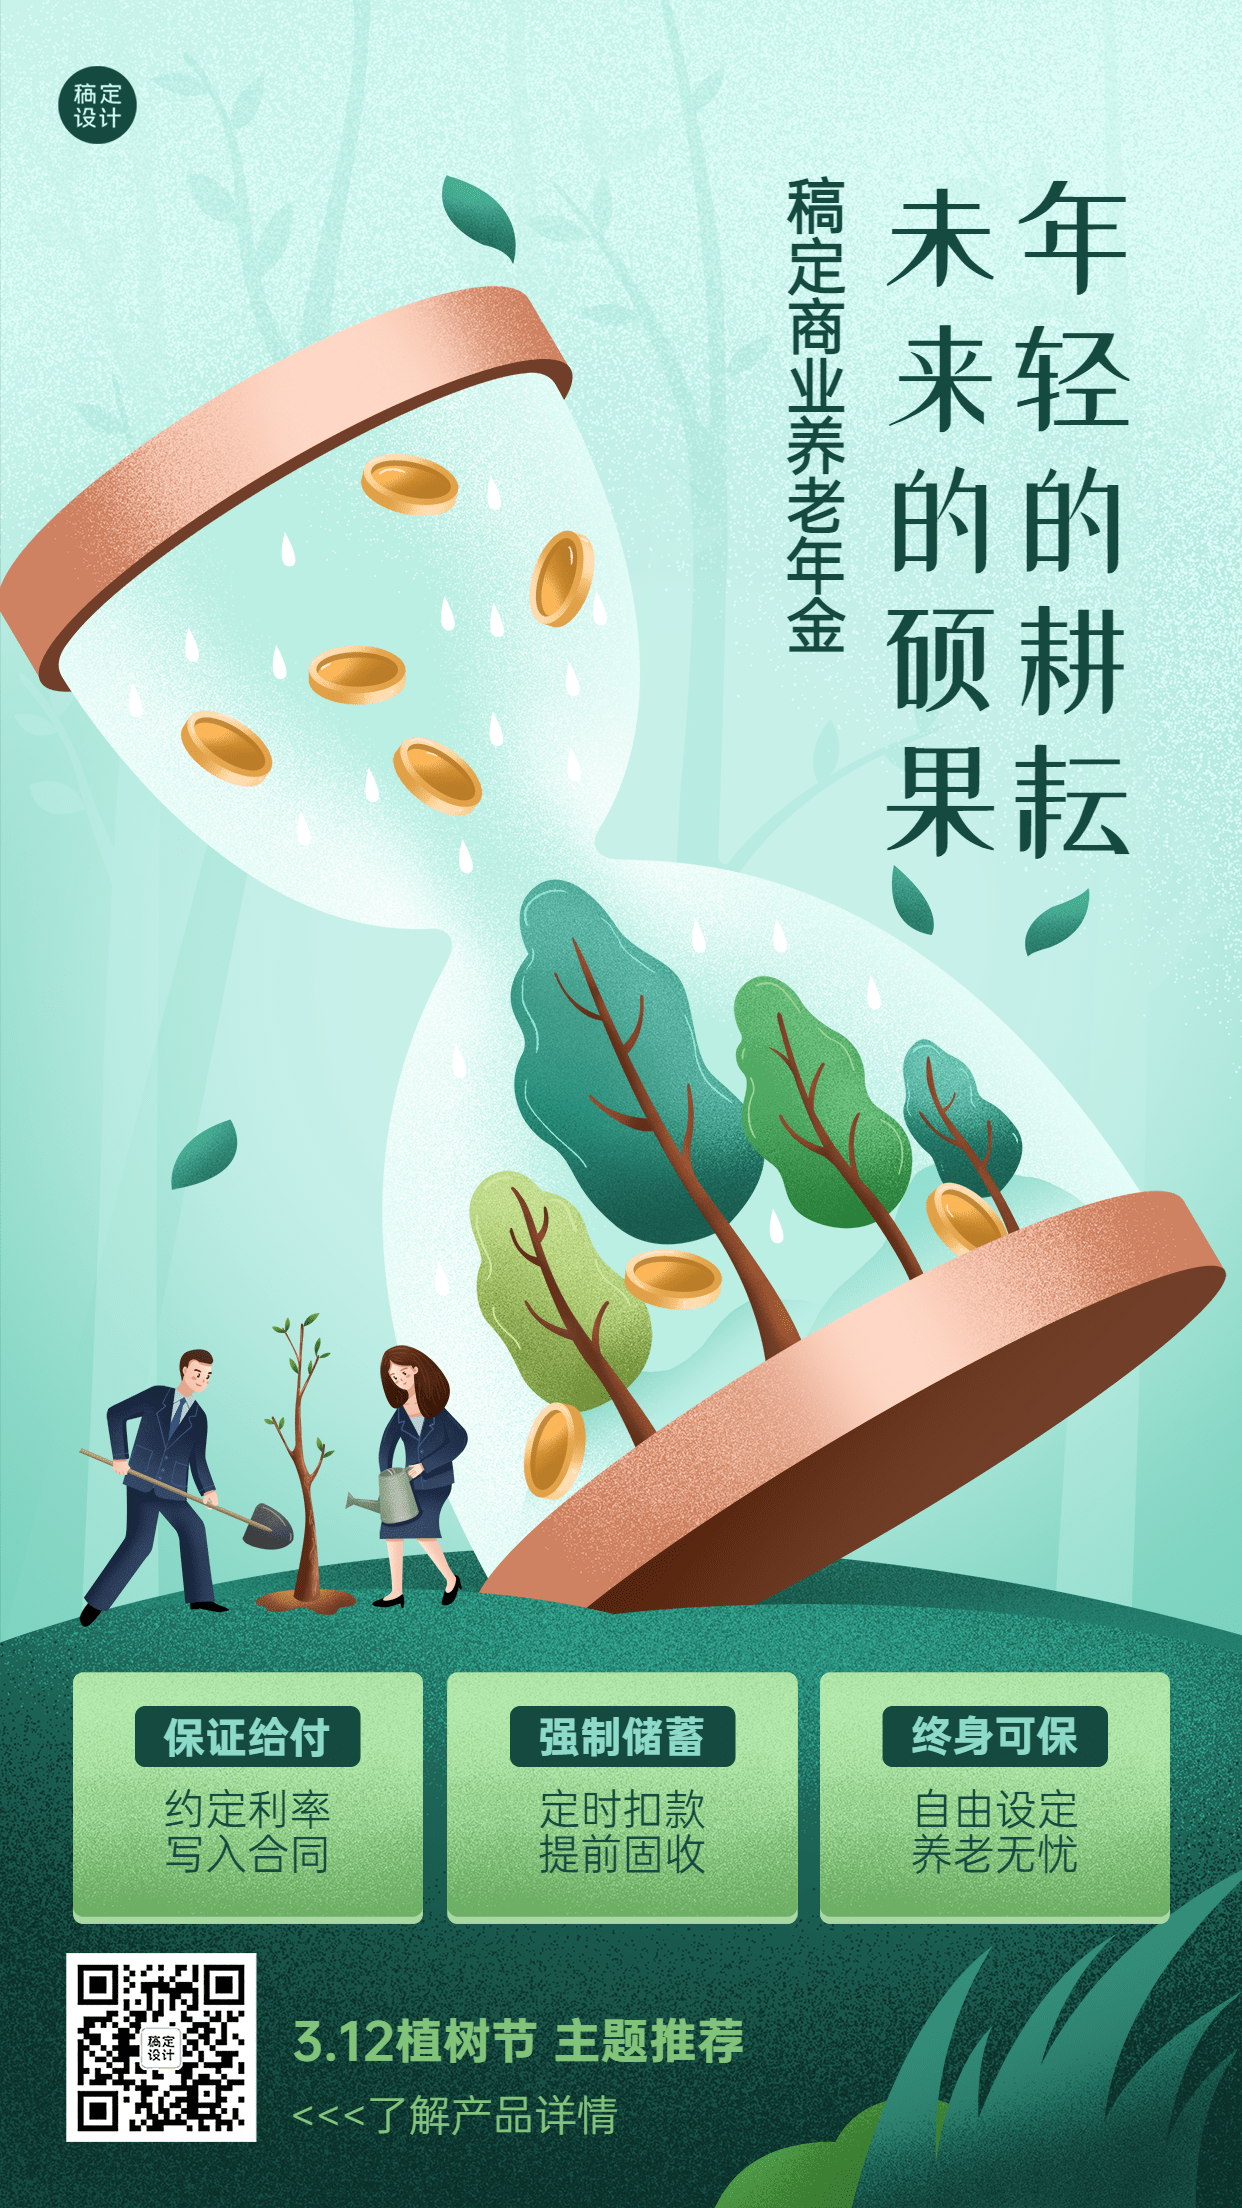 植树节金融保险节日产品营销宣传插画海报预览效果